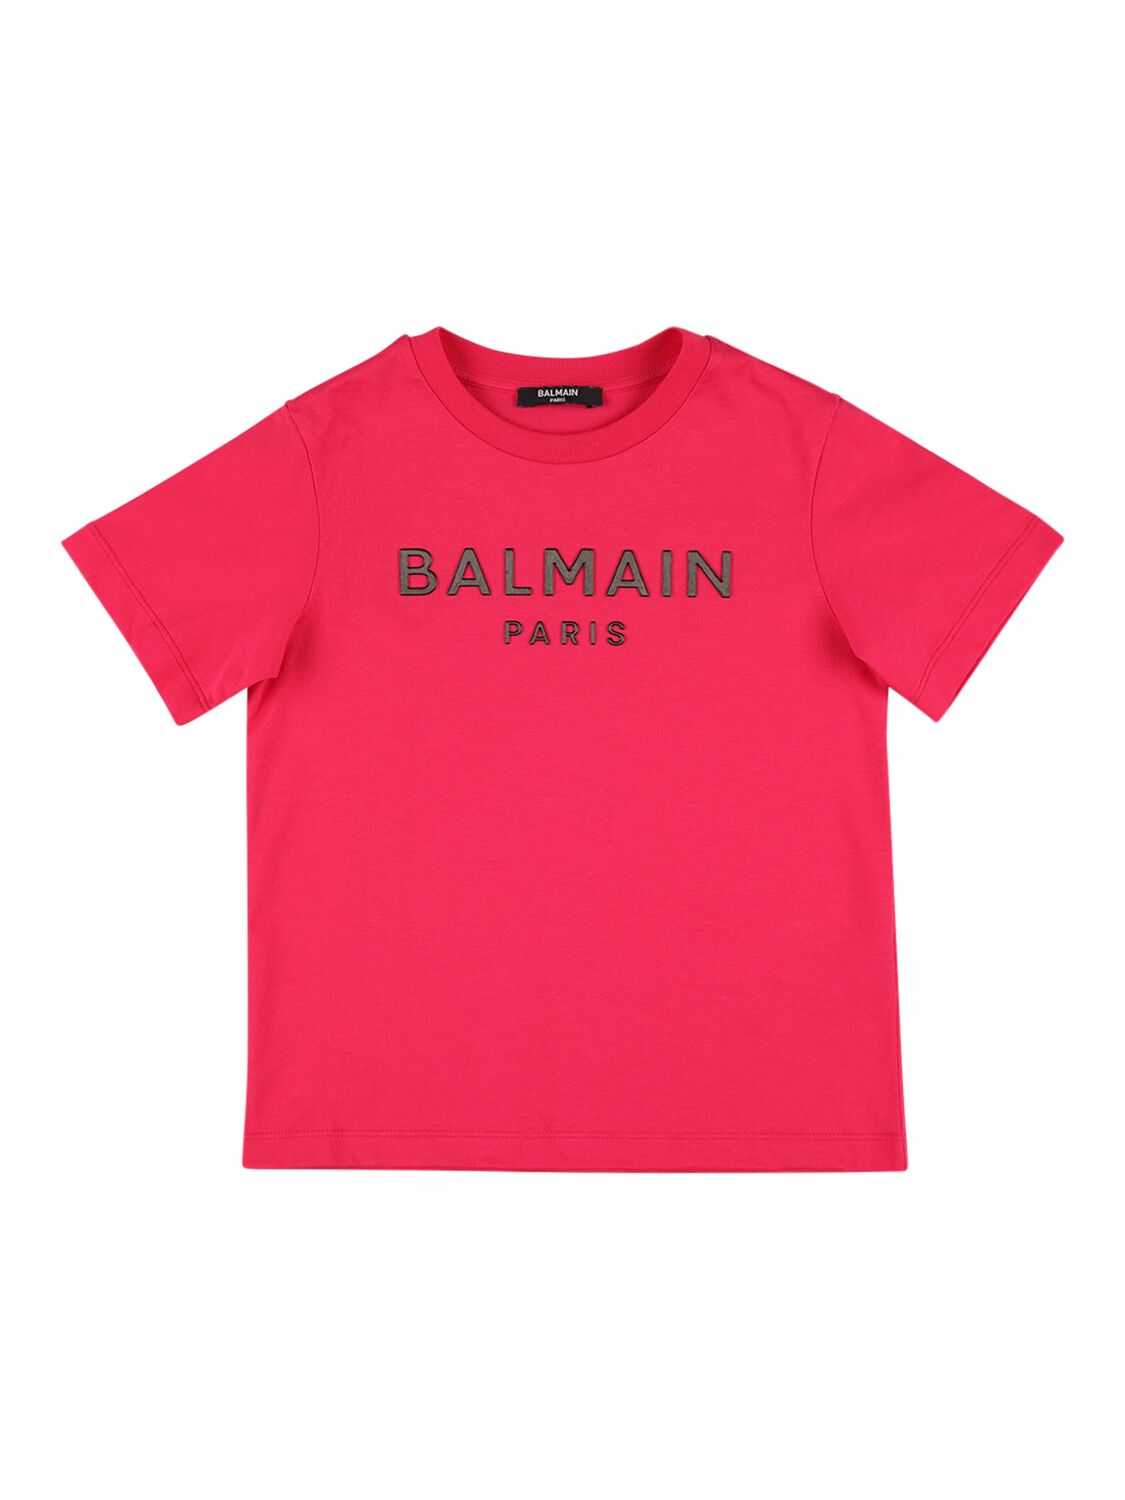 Balmain Kids' Organic Cotton Jersey T-shirt In Fuchsia